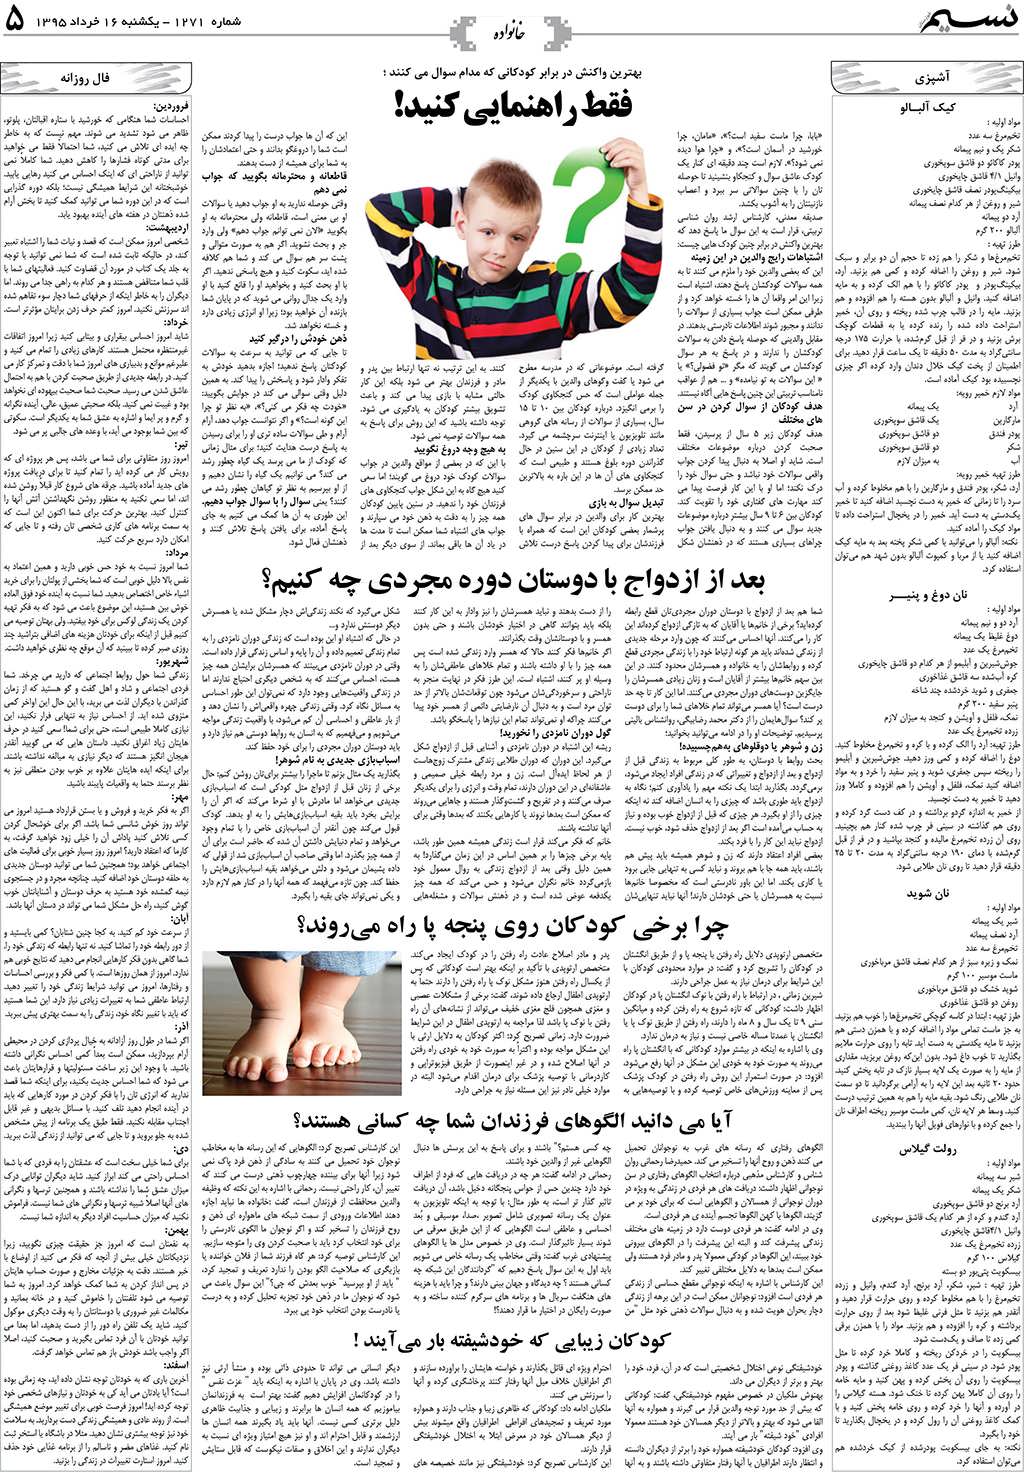 صفحه خانواده روزنامه نسیم شماره 1271